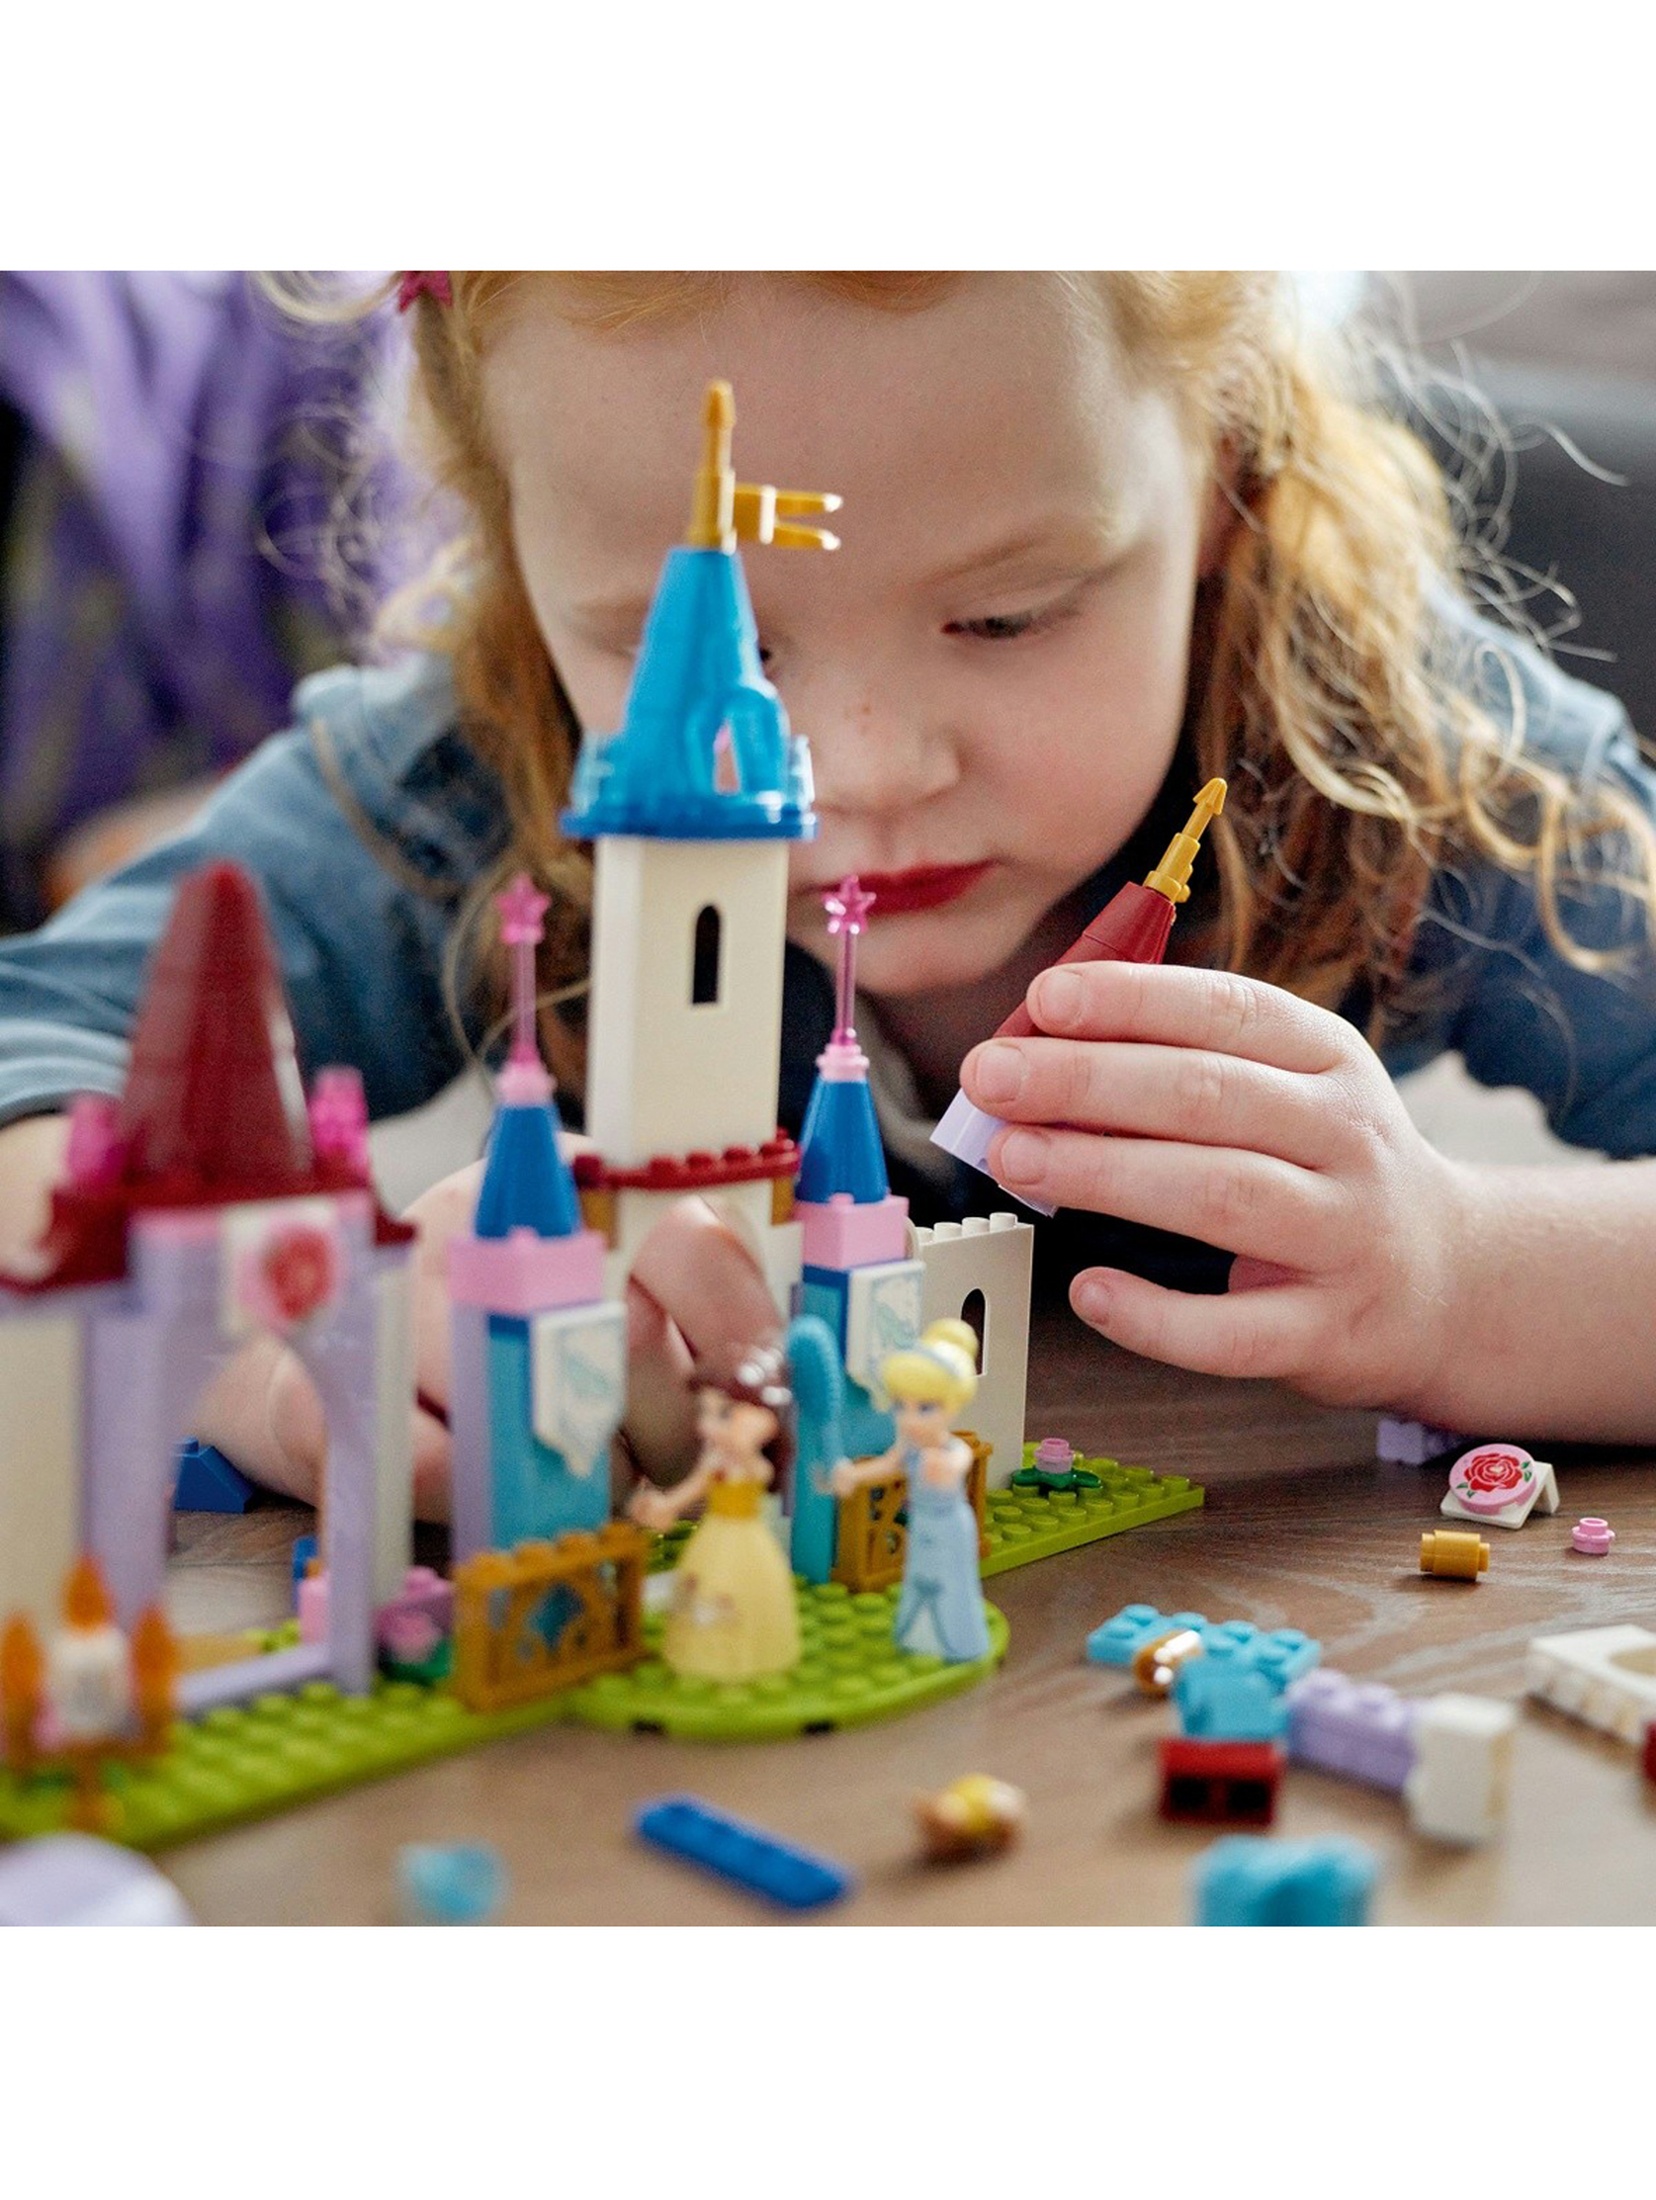 Klocki LEGO Disney Princess 43219 Kreatywne zamki księżniczek Disneya - 140 elementów, wiek 6 +